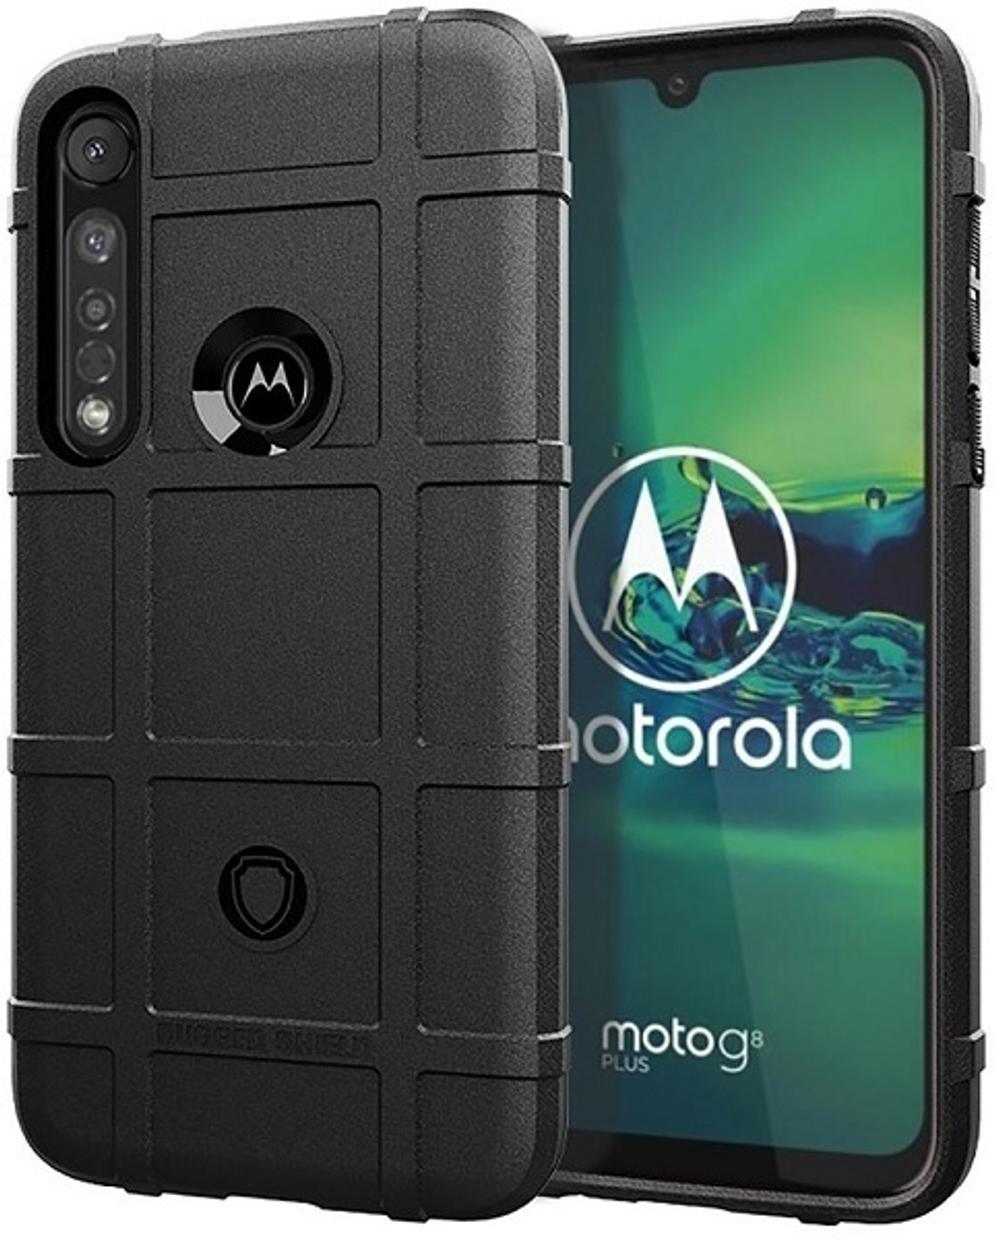 Чехол для Motorola Moto G8 plus цвет Black (черный), серия Armor от Caseport